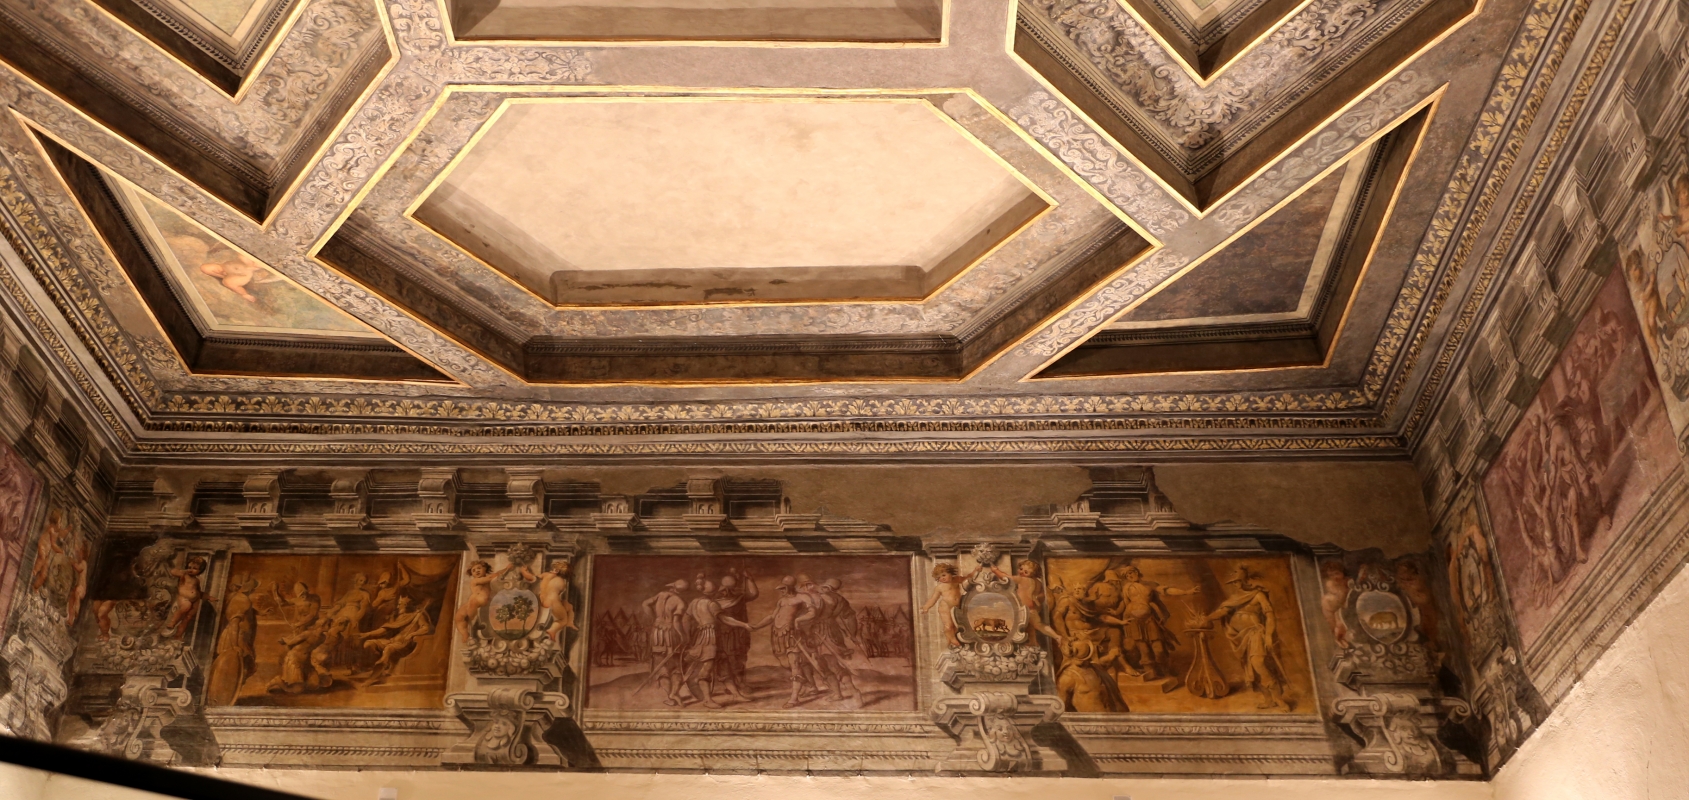 Gualtieri, palazzo bentivoglio, sala di icaro, fregio con storie di roma da tito livio, 1600-05 circa, 01 - Sailko